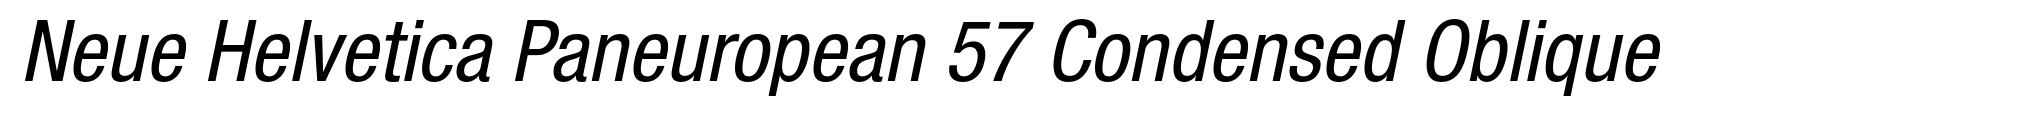 Neue Helvetica Paneuropean 57 Condensed Oblique image